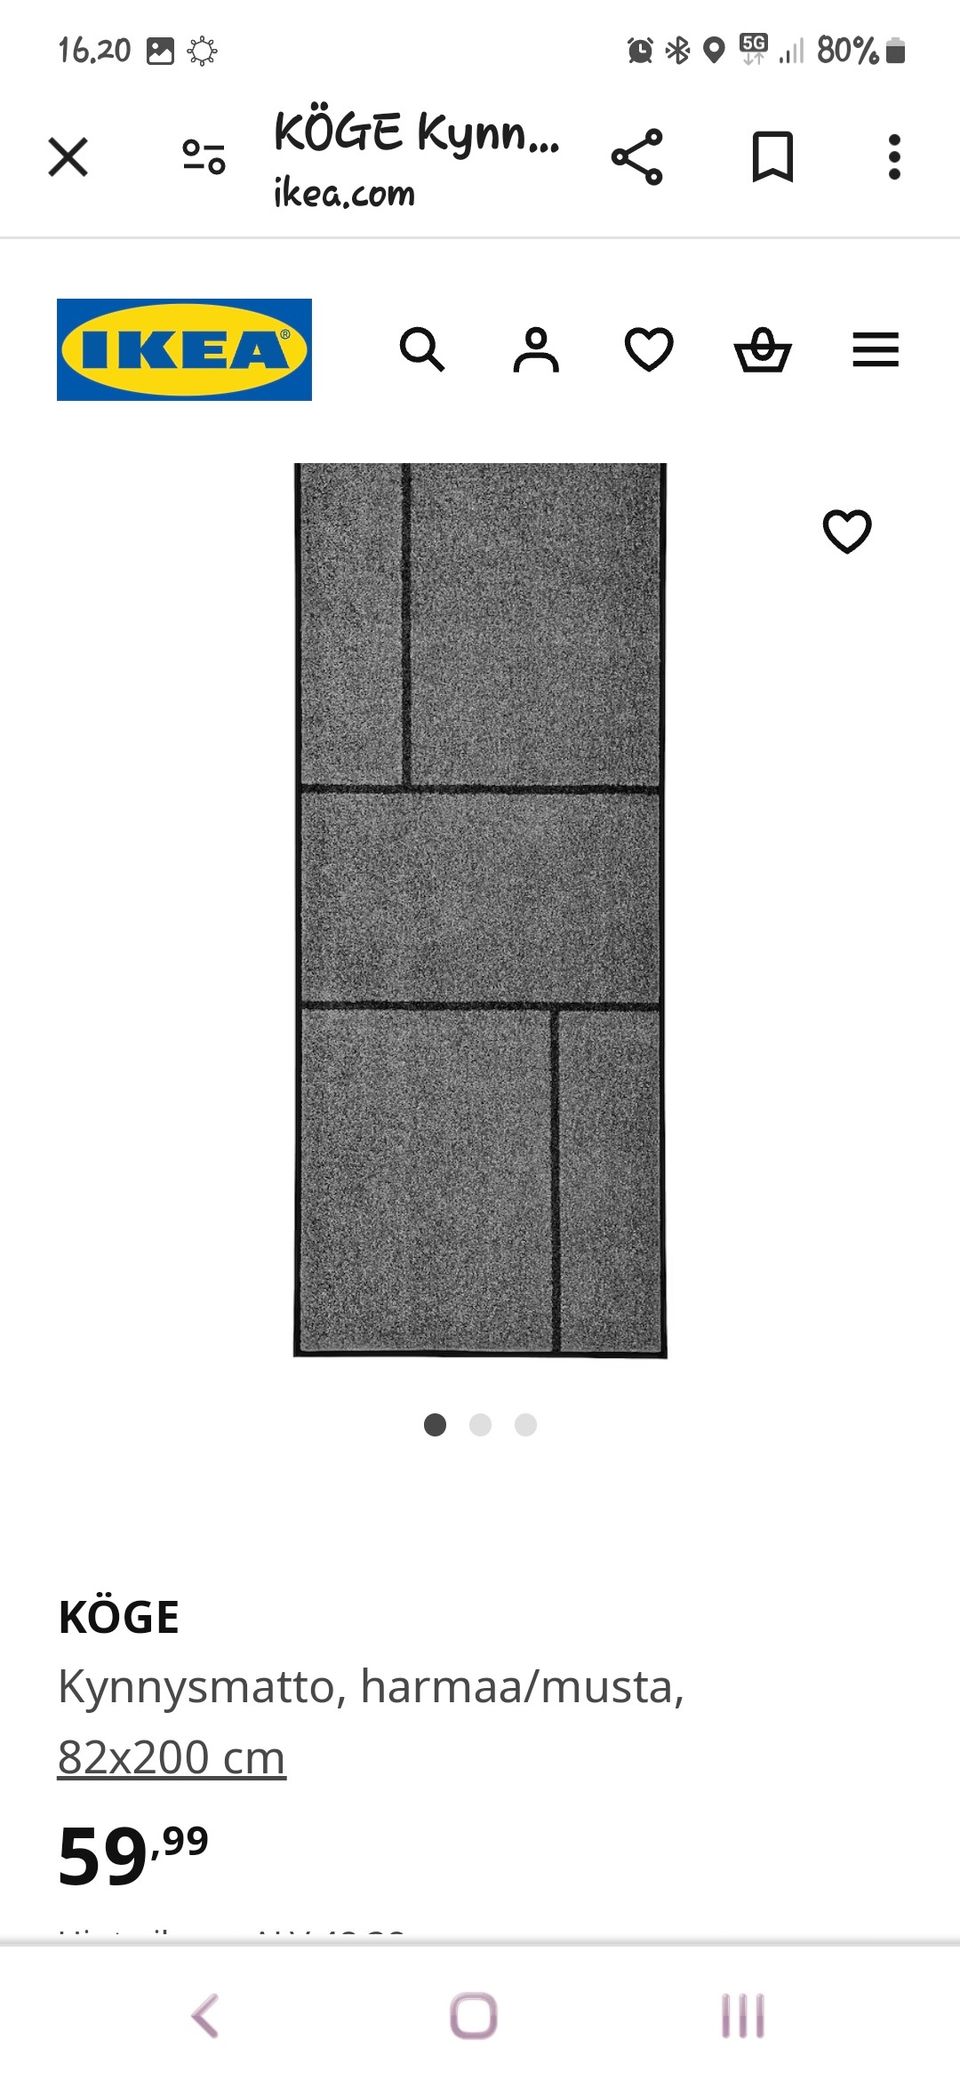 2kpl Ikean Köge mattoa